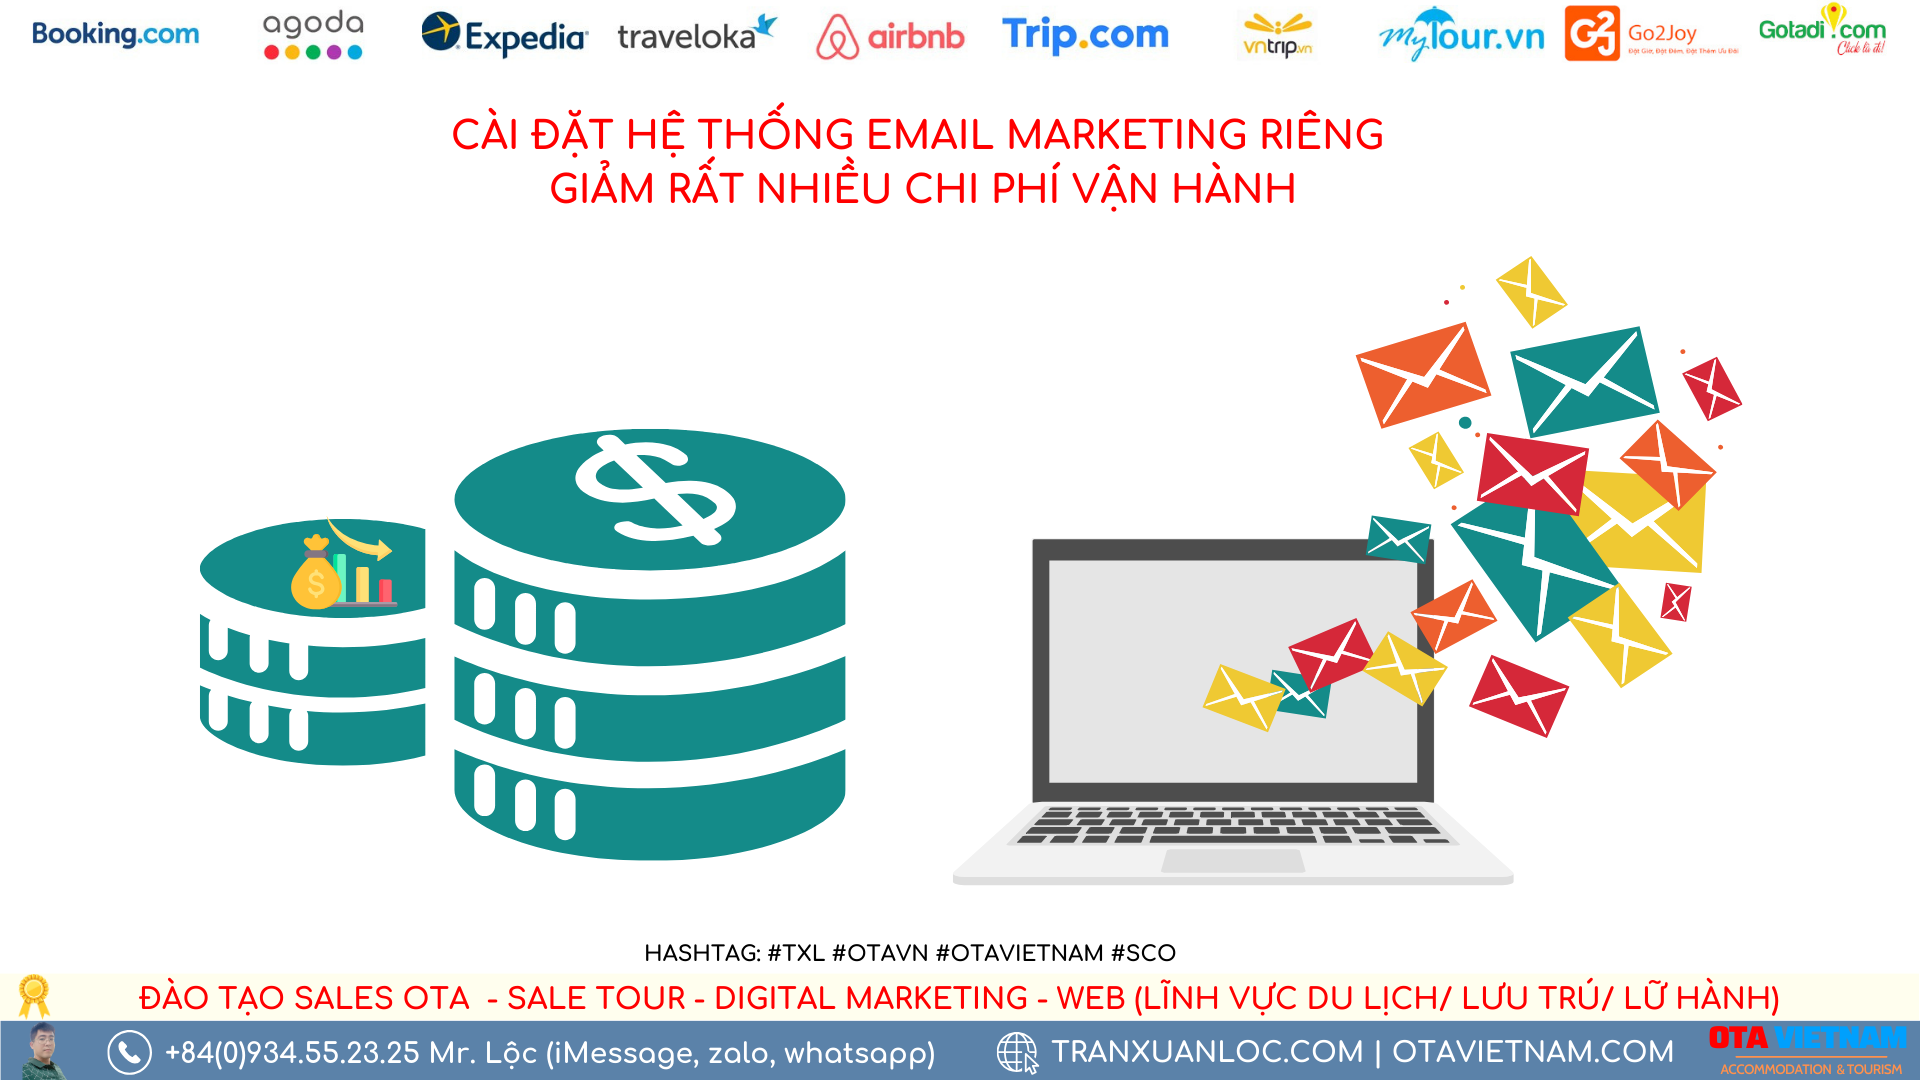 Otavn Txl Dang Ky Goi Dich Vu Cai Dat He Thong Email Marketing Rieng Cho Doanh Nghiep (2)